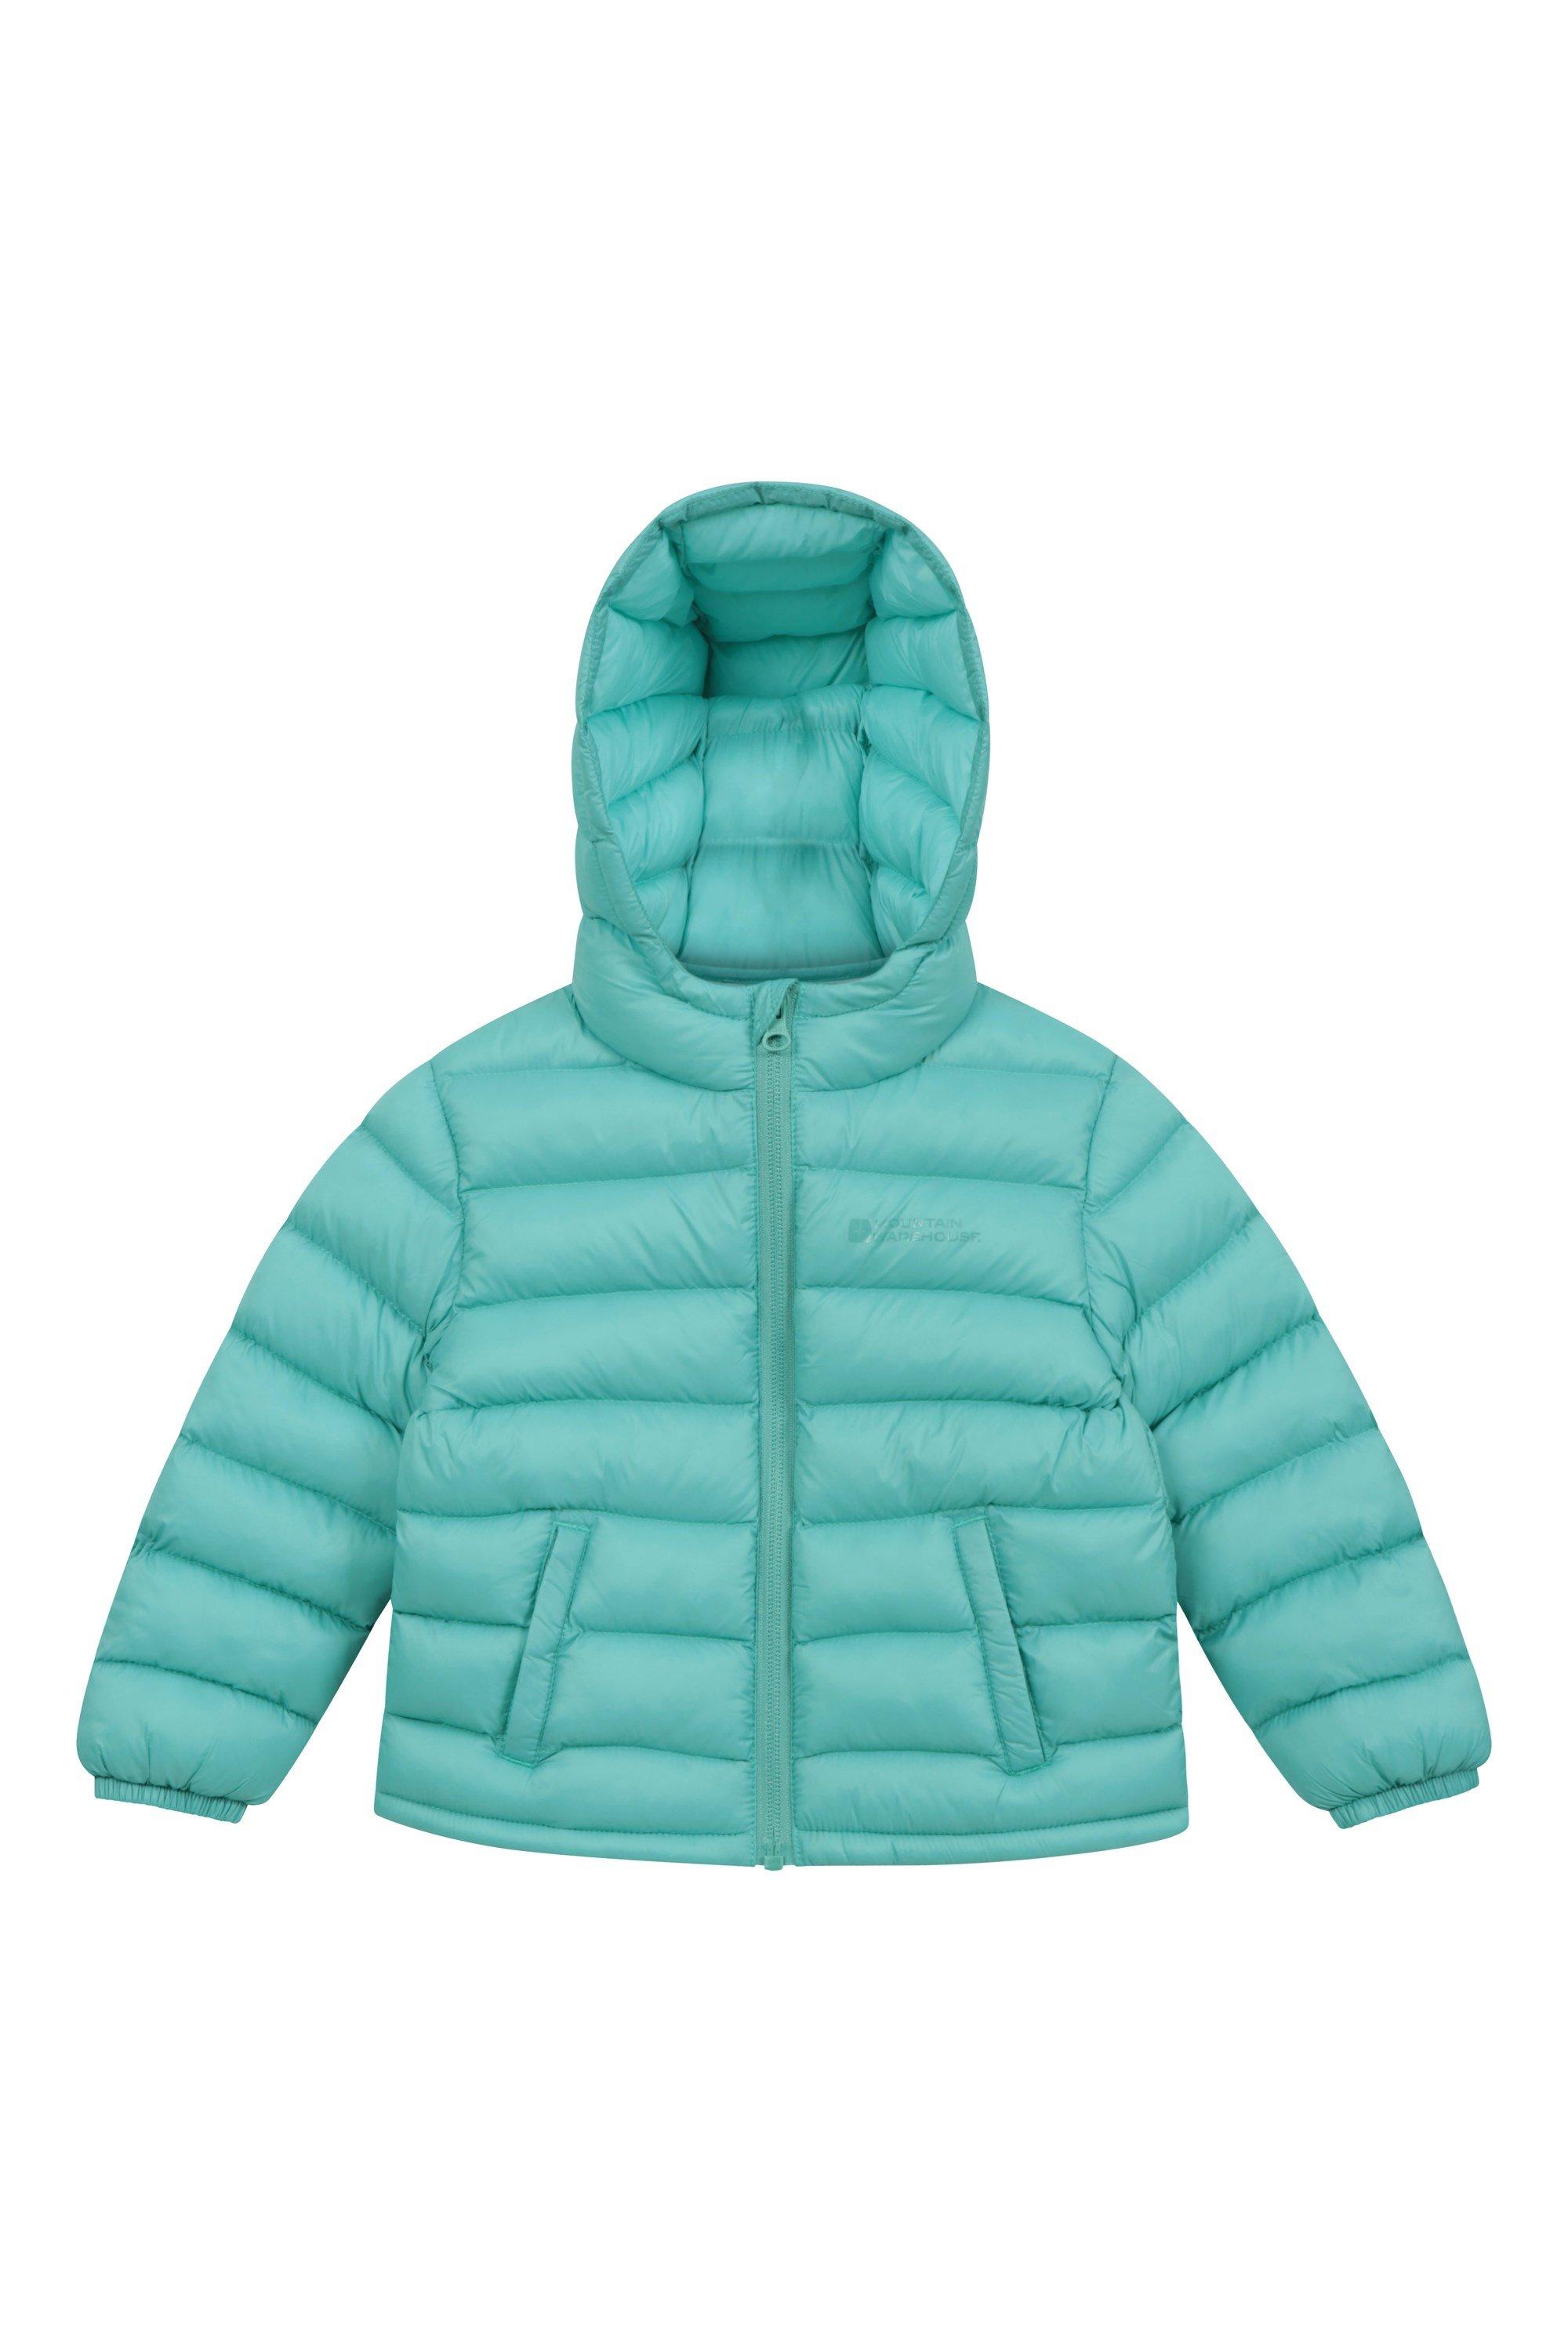 Стеганая куртка Baby Seasons, водонепроницаемое пальто с пуховым капюшоном Mountain Warehouse, зеленый